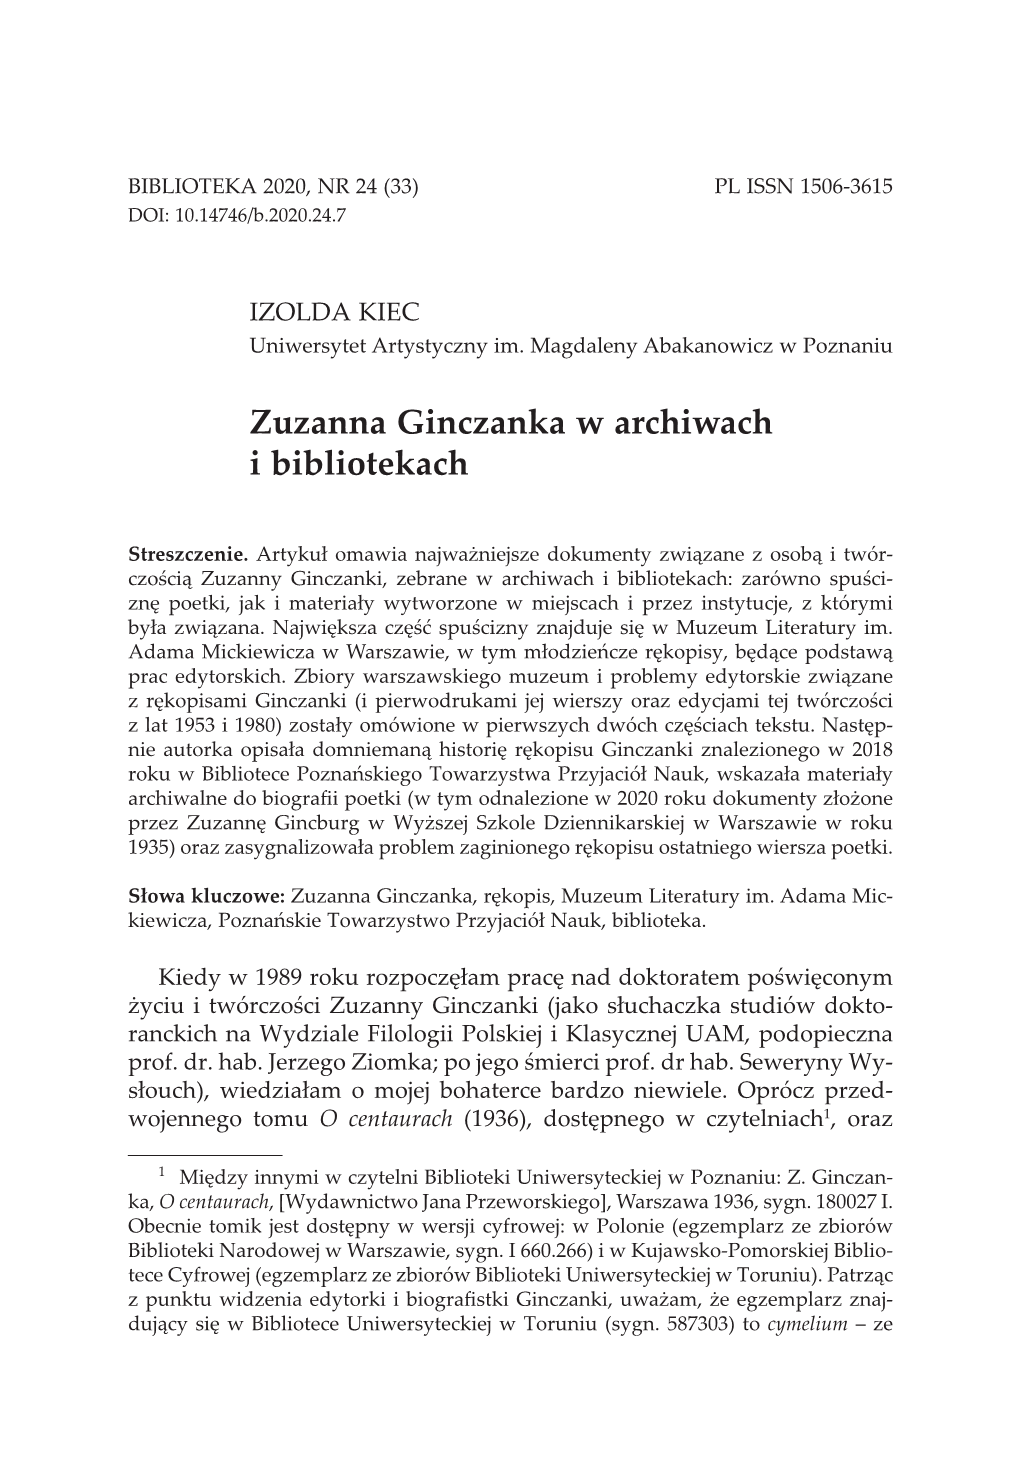 Zuzanna Ginczanka W Archiwach I Bibliotekach 191